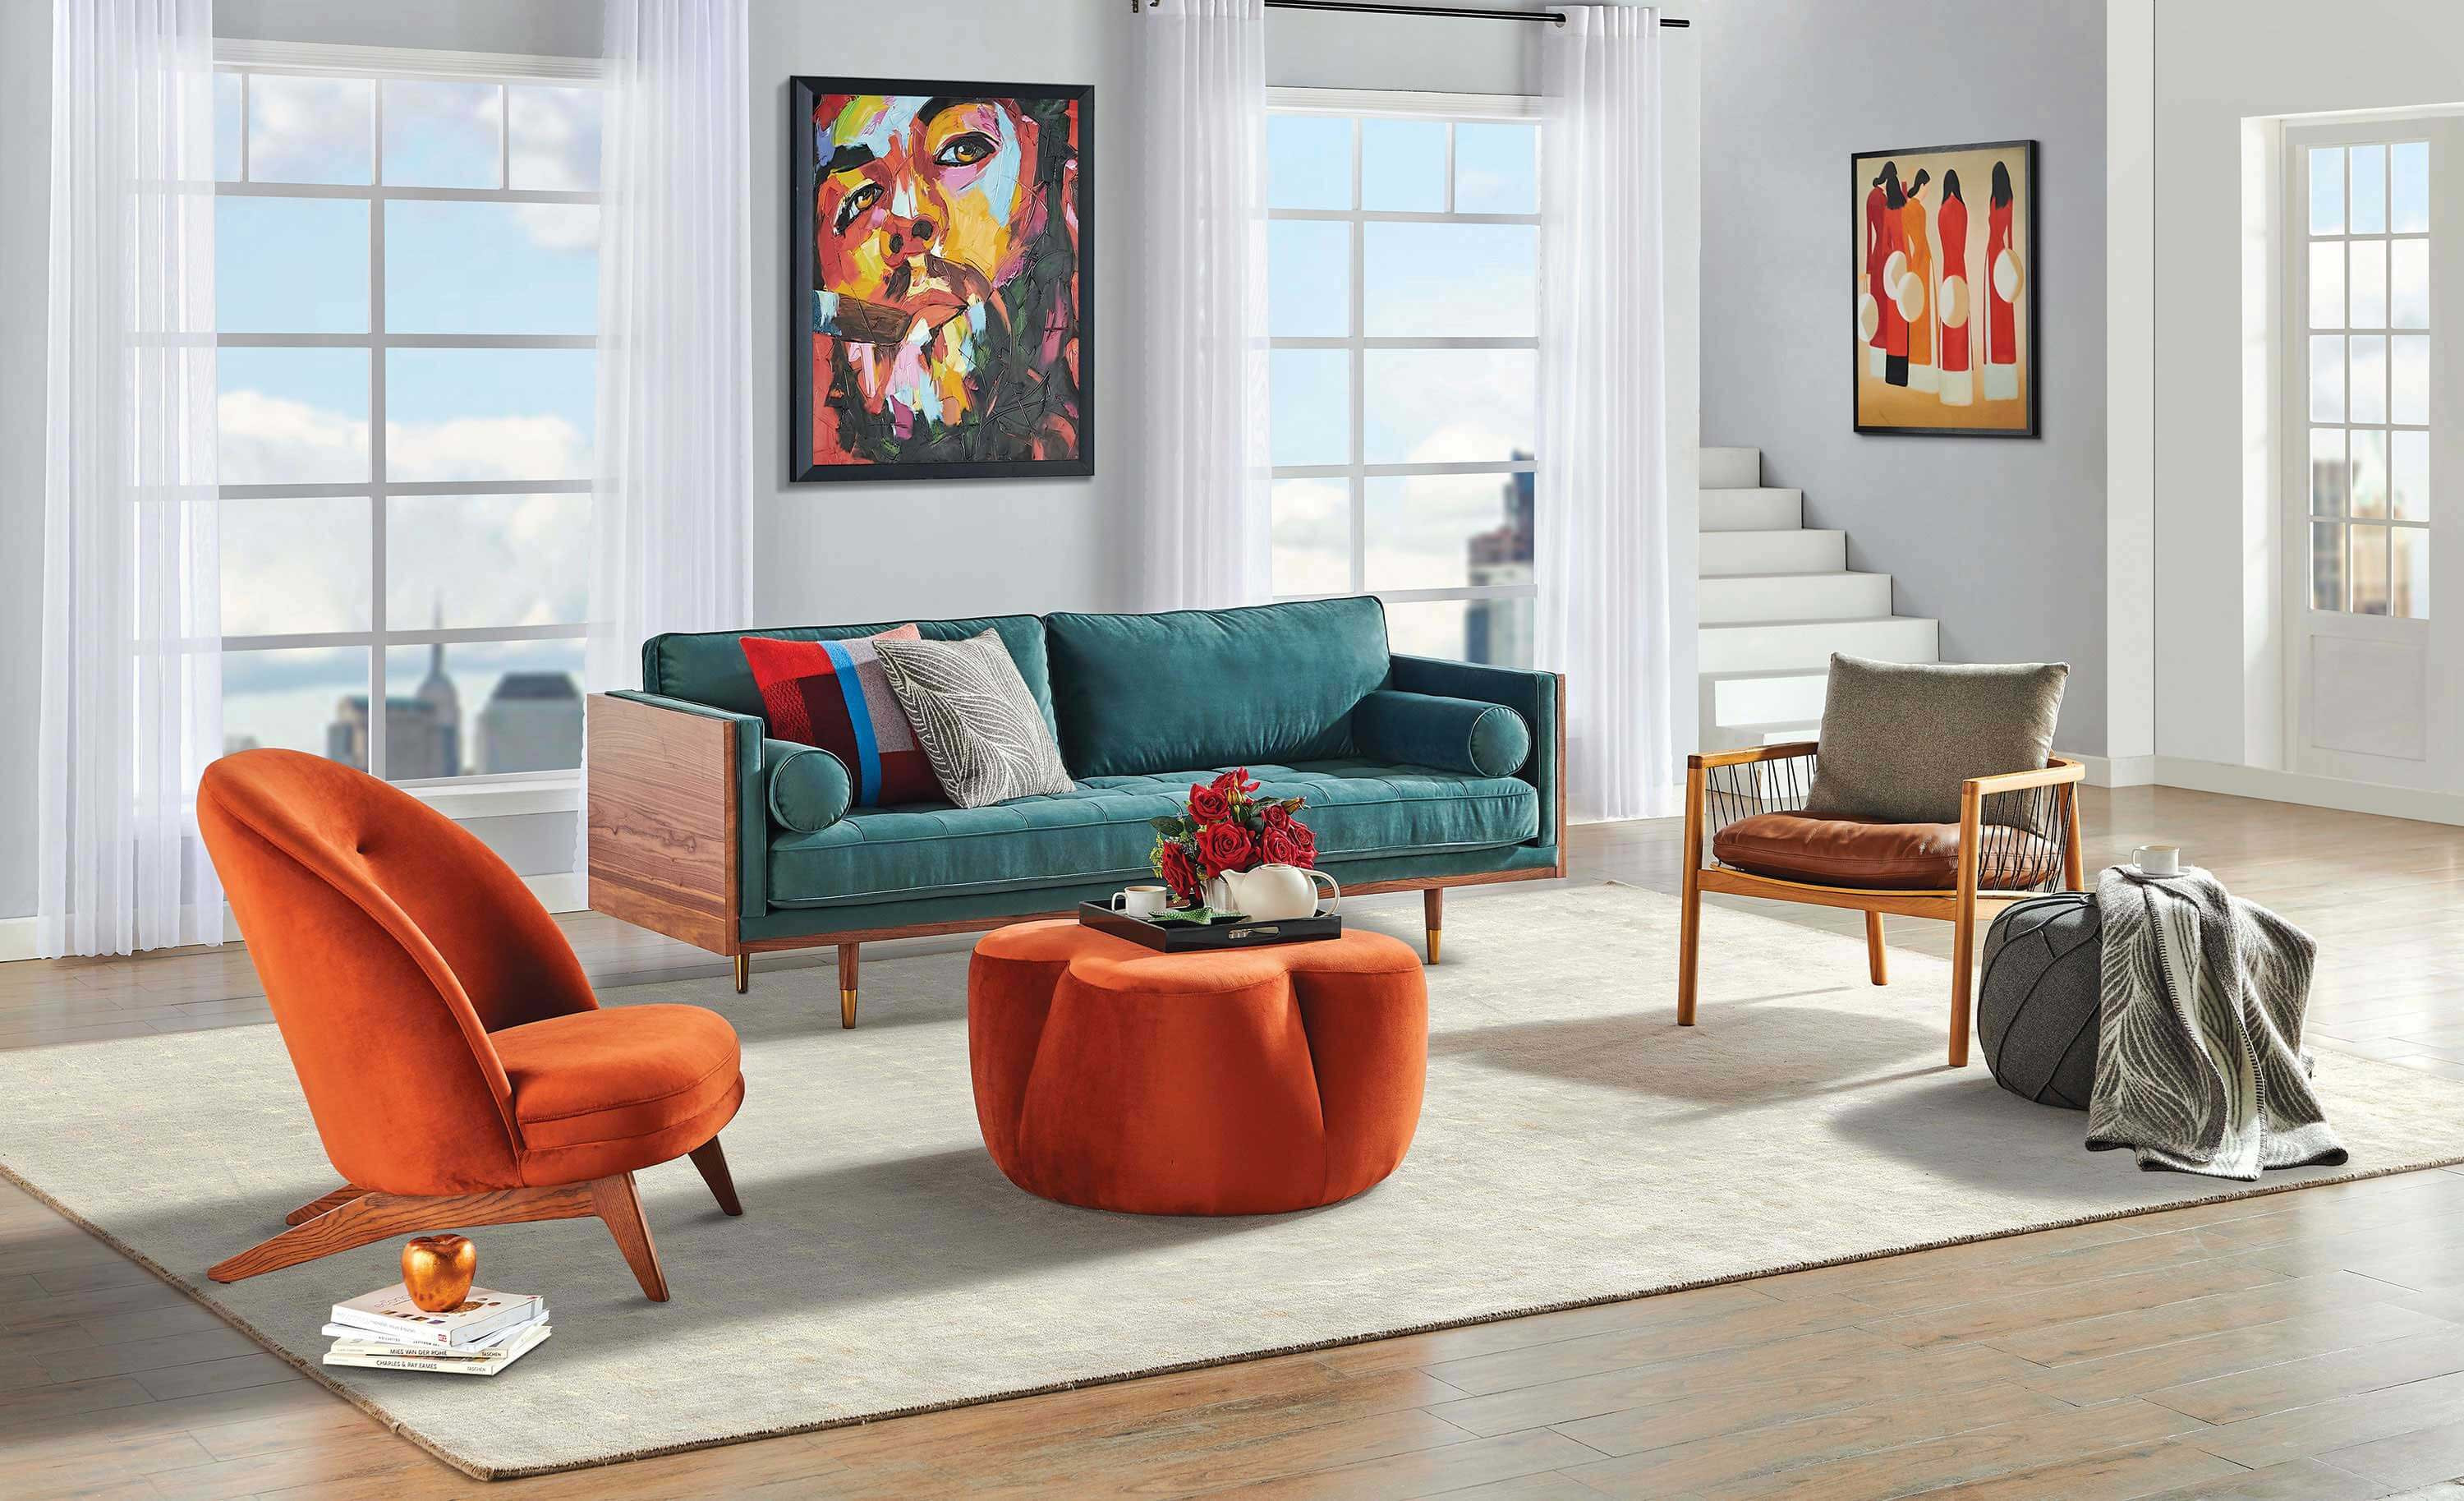 Midcentury modern living room in 4 steps  by White on White  White On  White  Medium